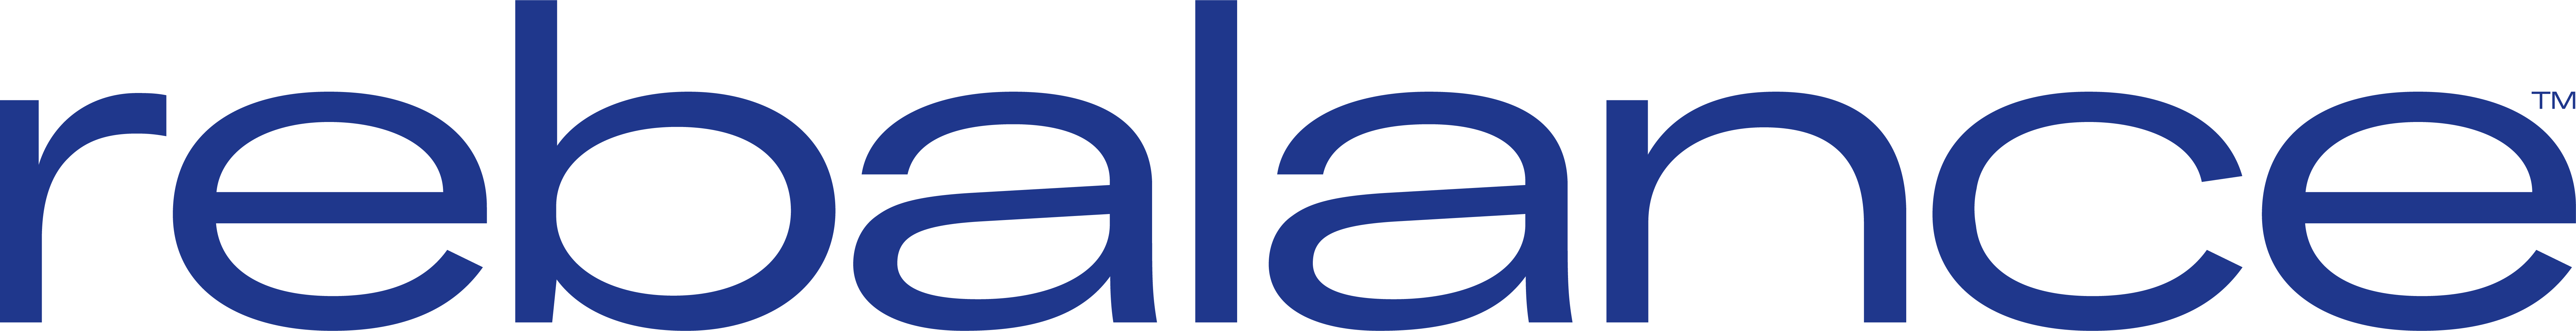 Rebalance logo